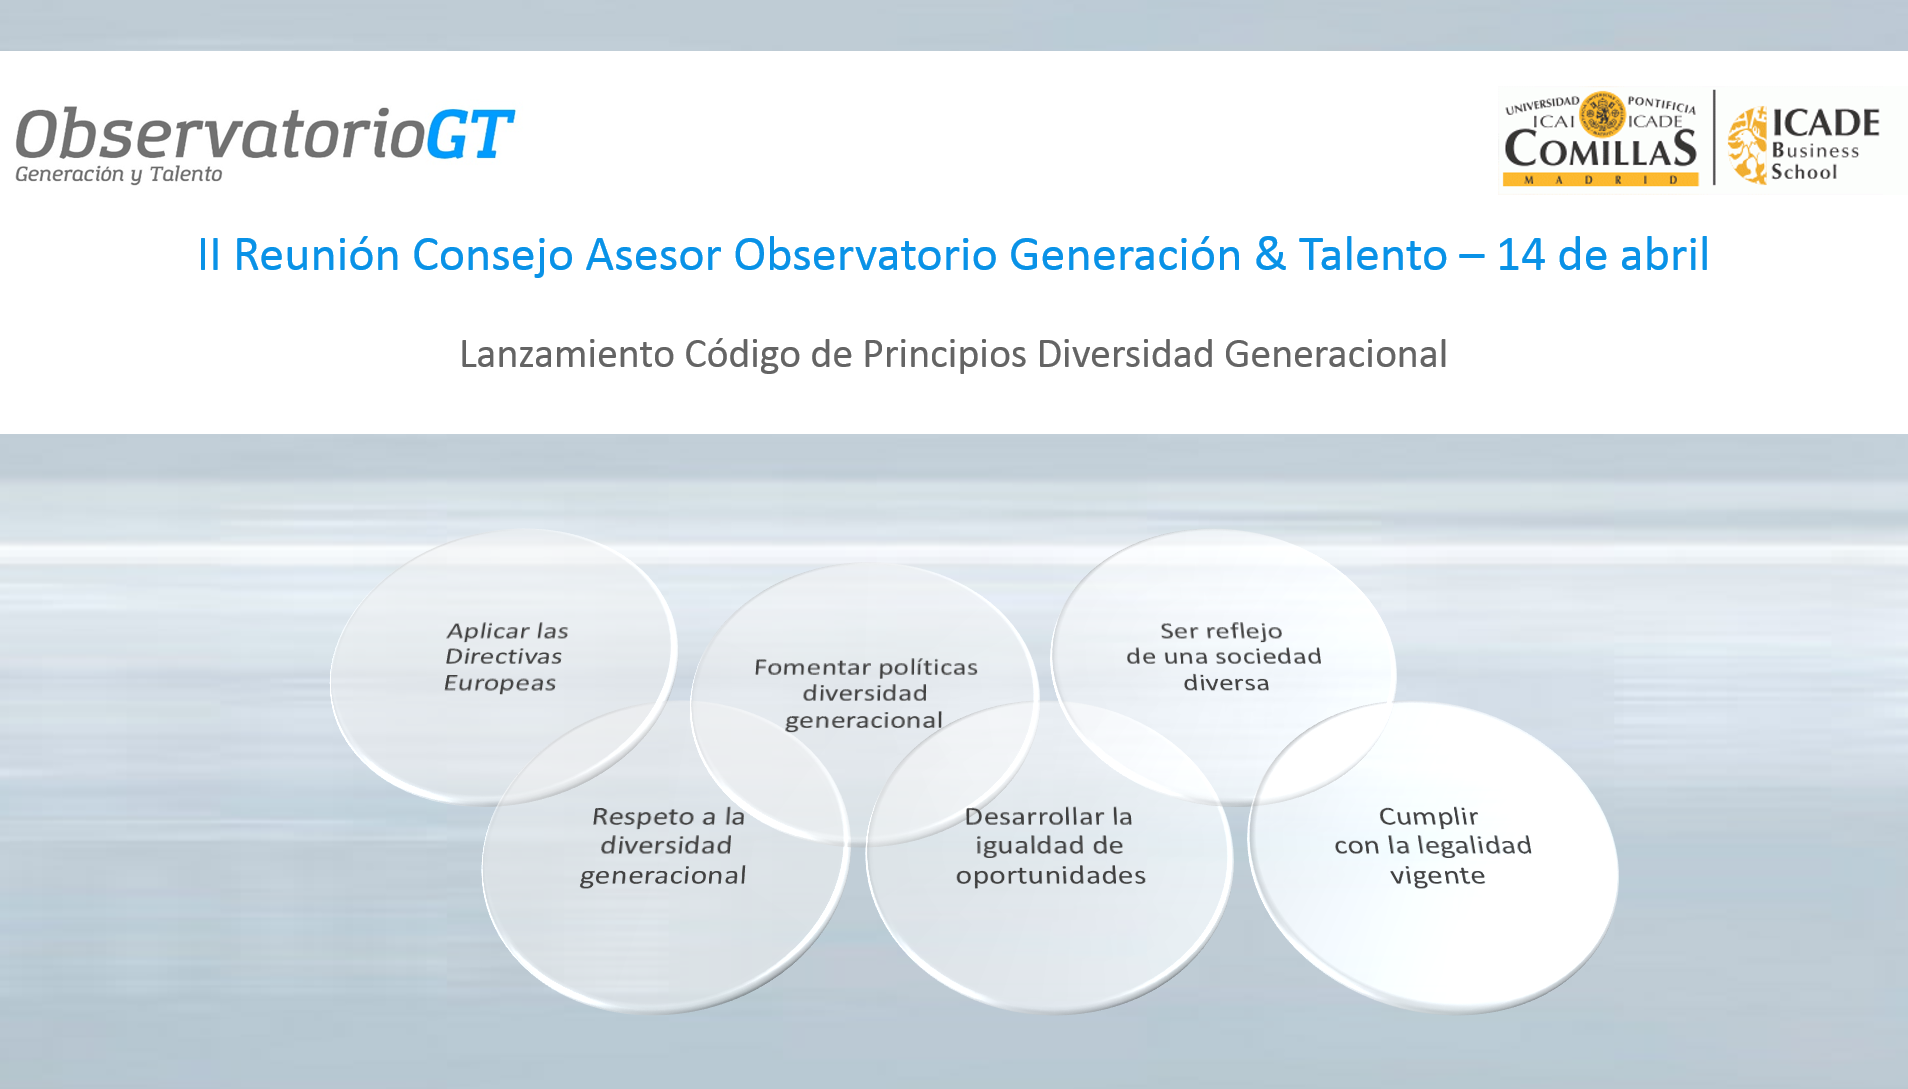 El Observatorio Generación & Talento impulsa el Código de Principios de Diversidad Generacional